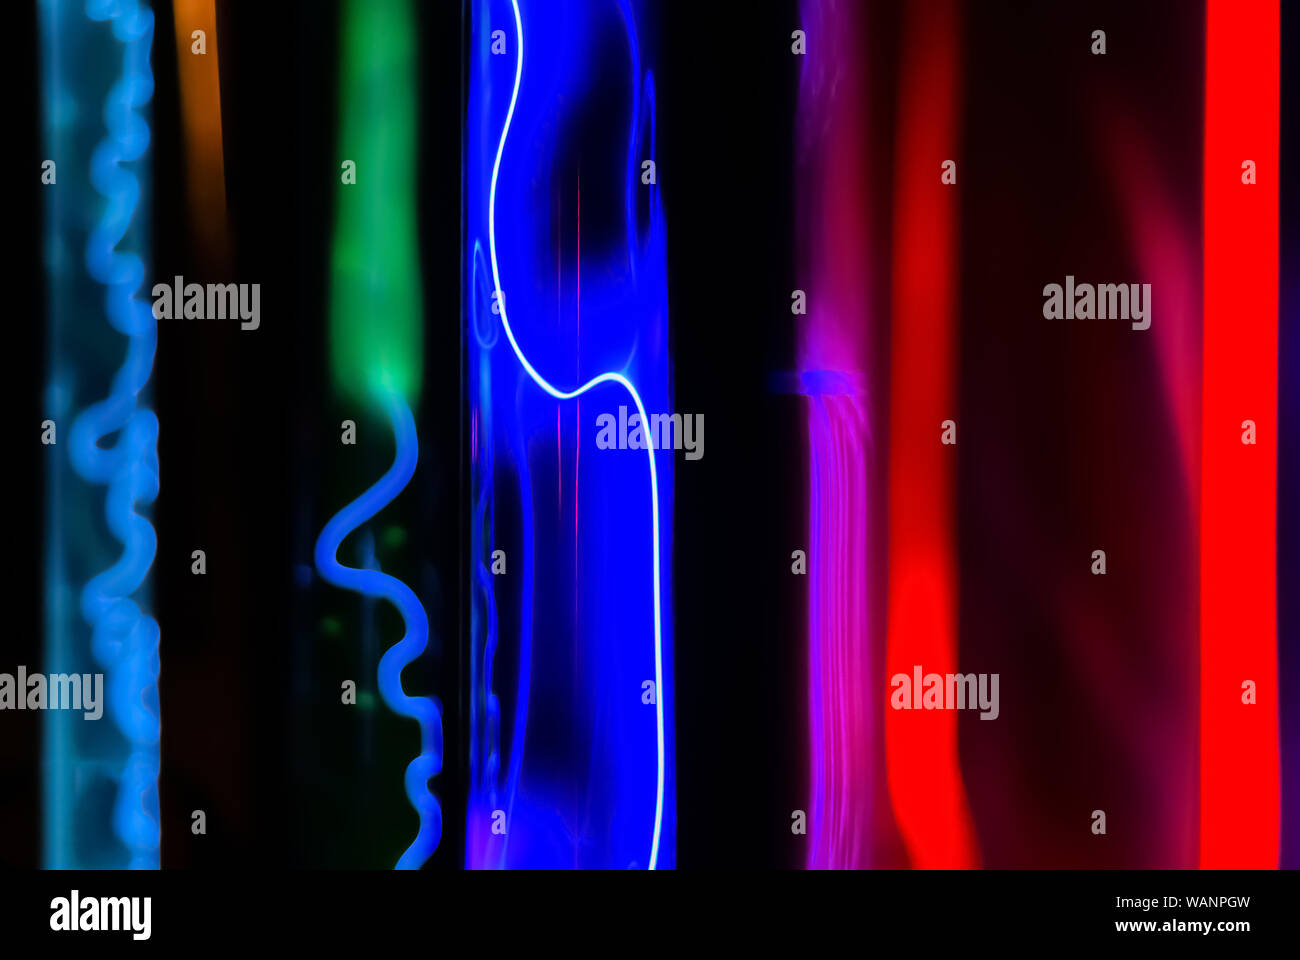 Abstrakte fluoreszierenden Hintergrund - mehrfarbig Leuchten verschiedener Edelgase im Plasma Rohre unter der Aktion einer elektrischen Entladung Stockfoto